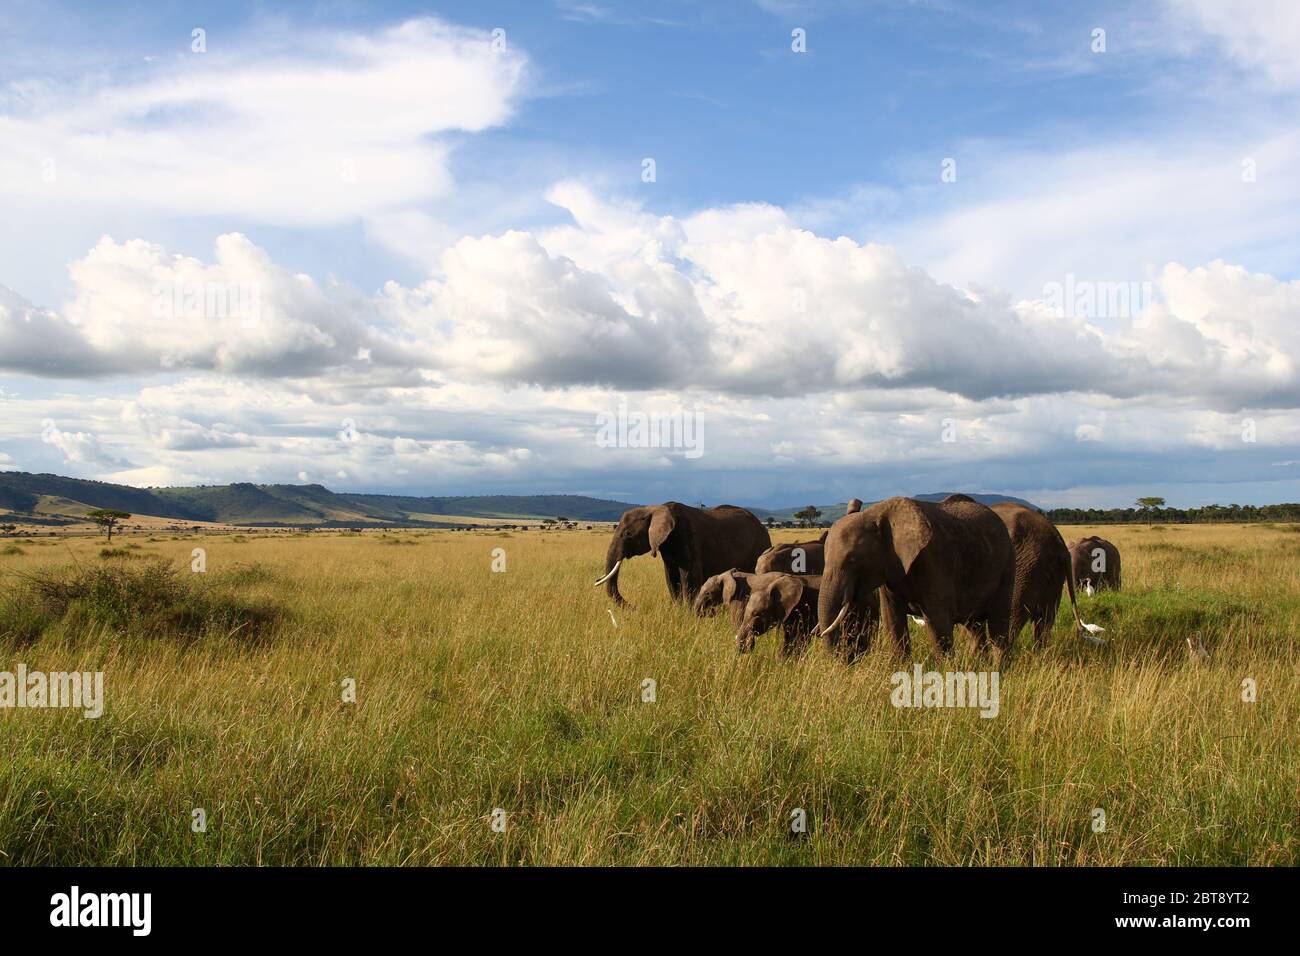 Una mandria di elefanti vota l'erba alta della savana keniana con le imponenti nuvole nel cielo al sole della sera Foto Stock